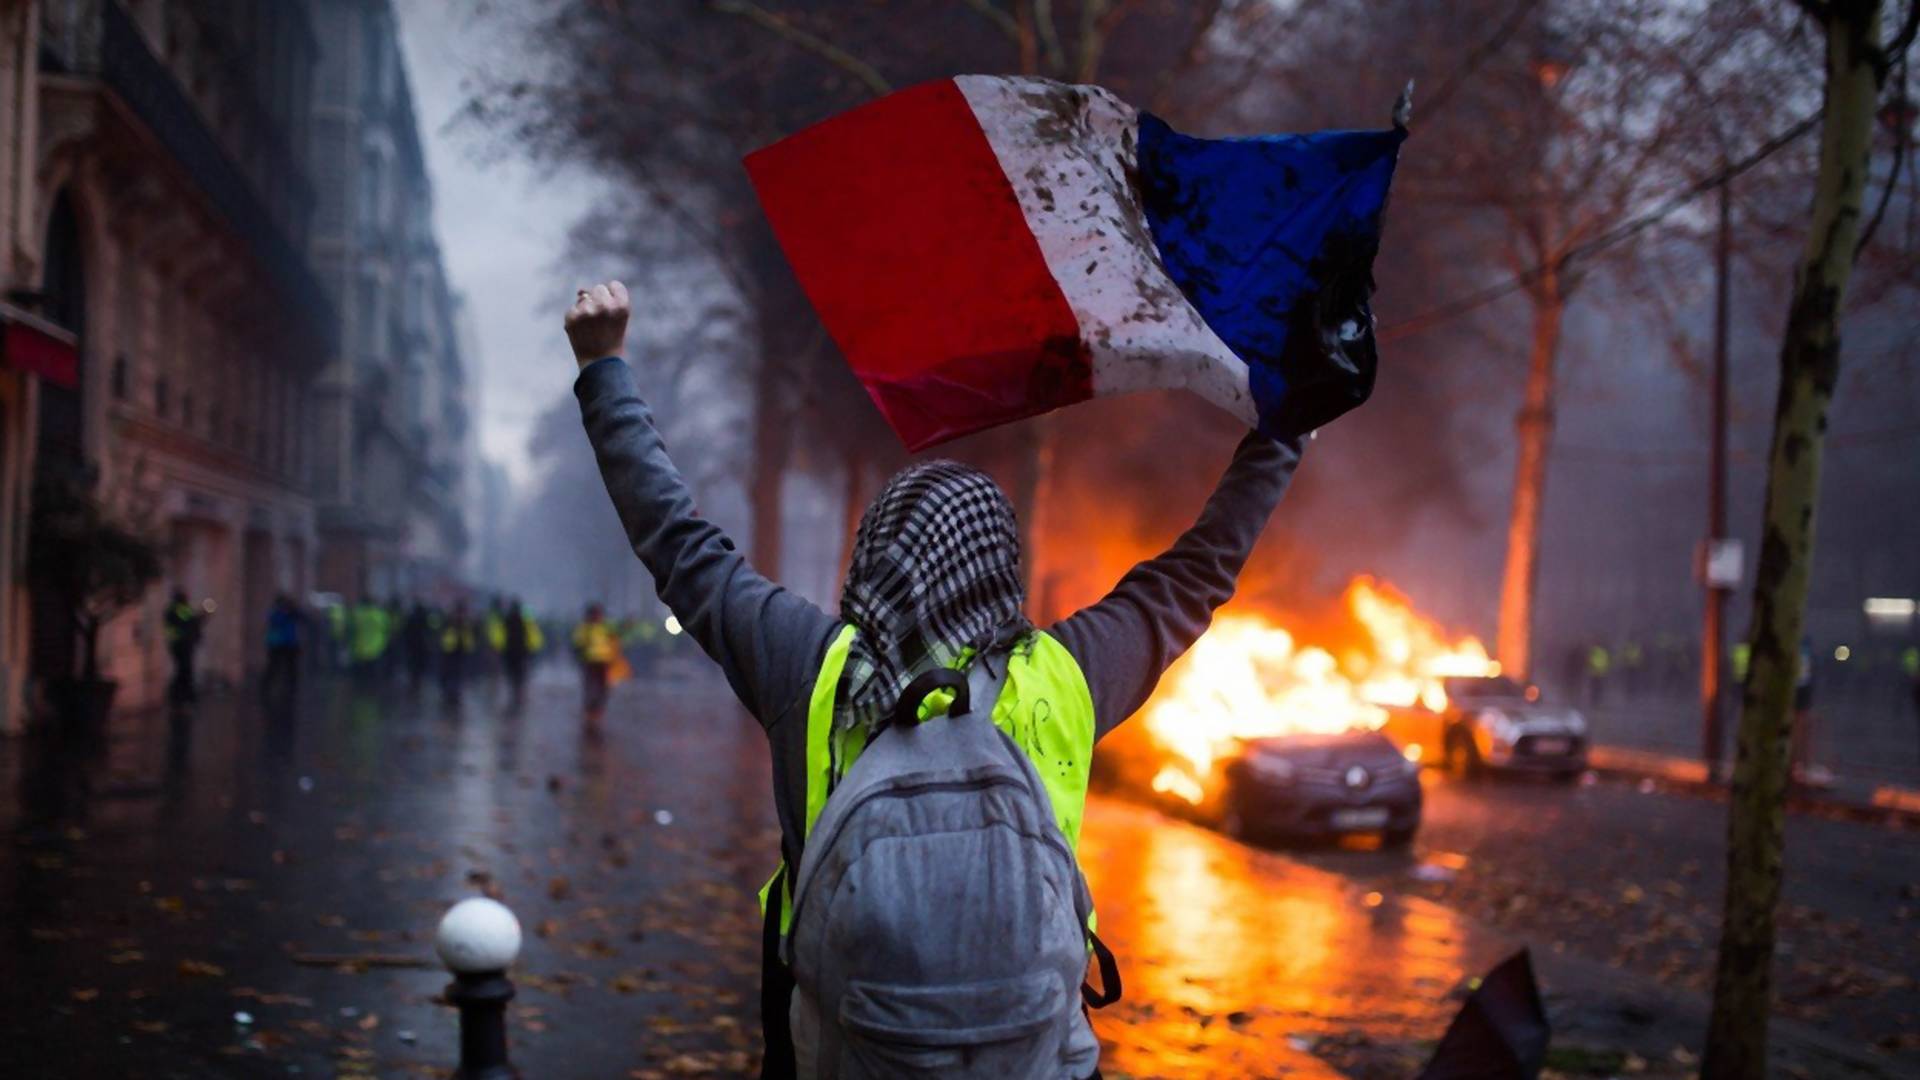 Bes, vatra i suze na ulicama Pariza